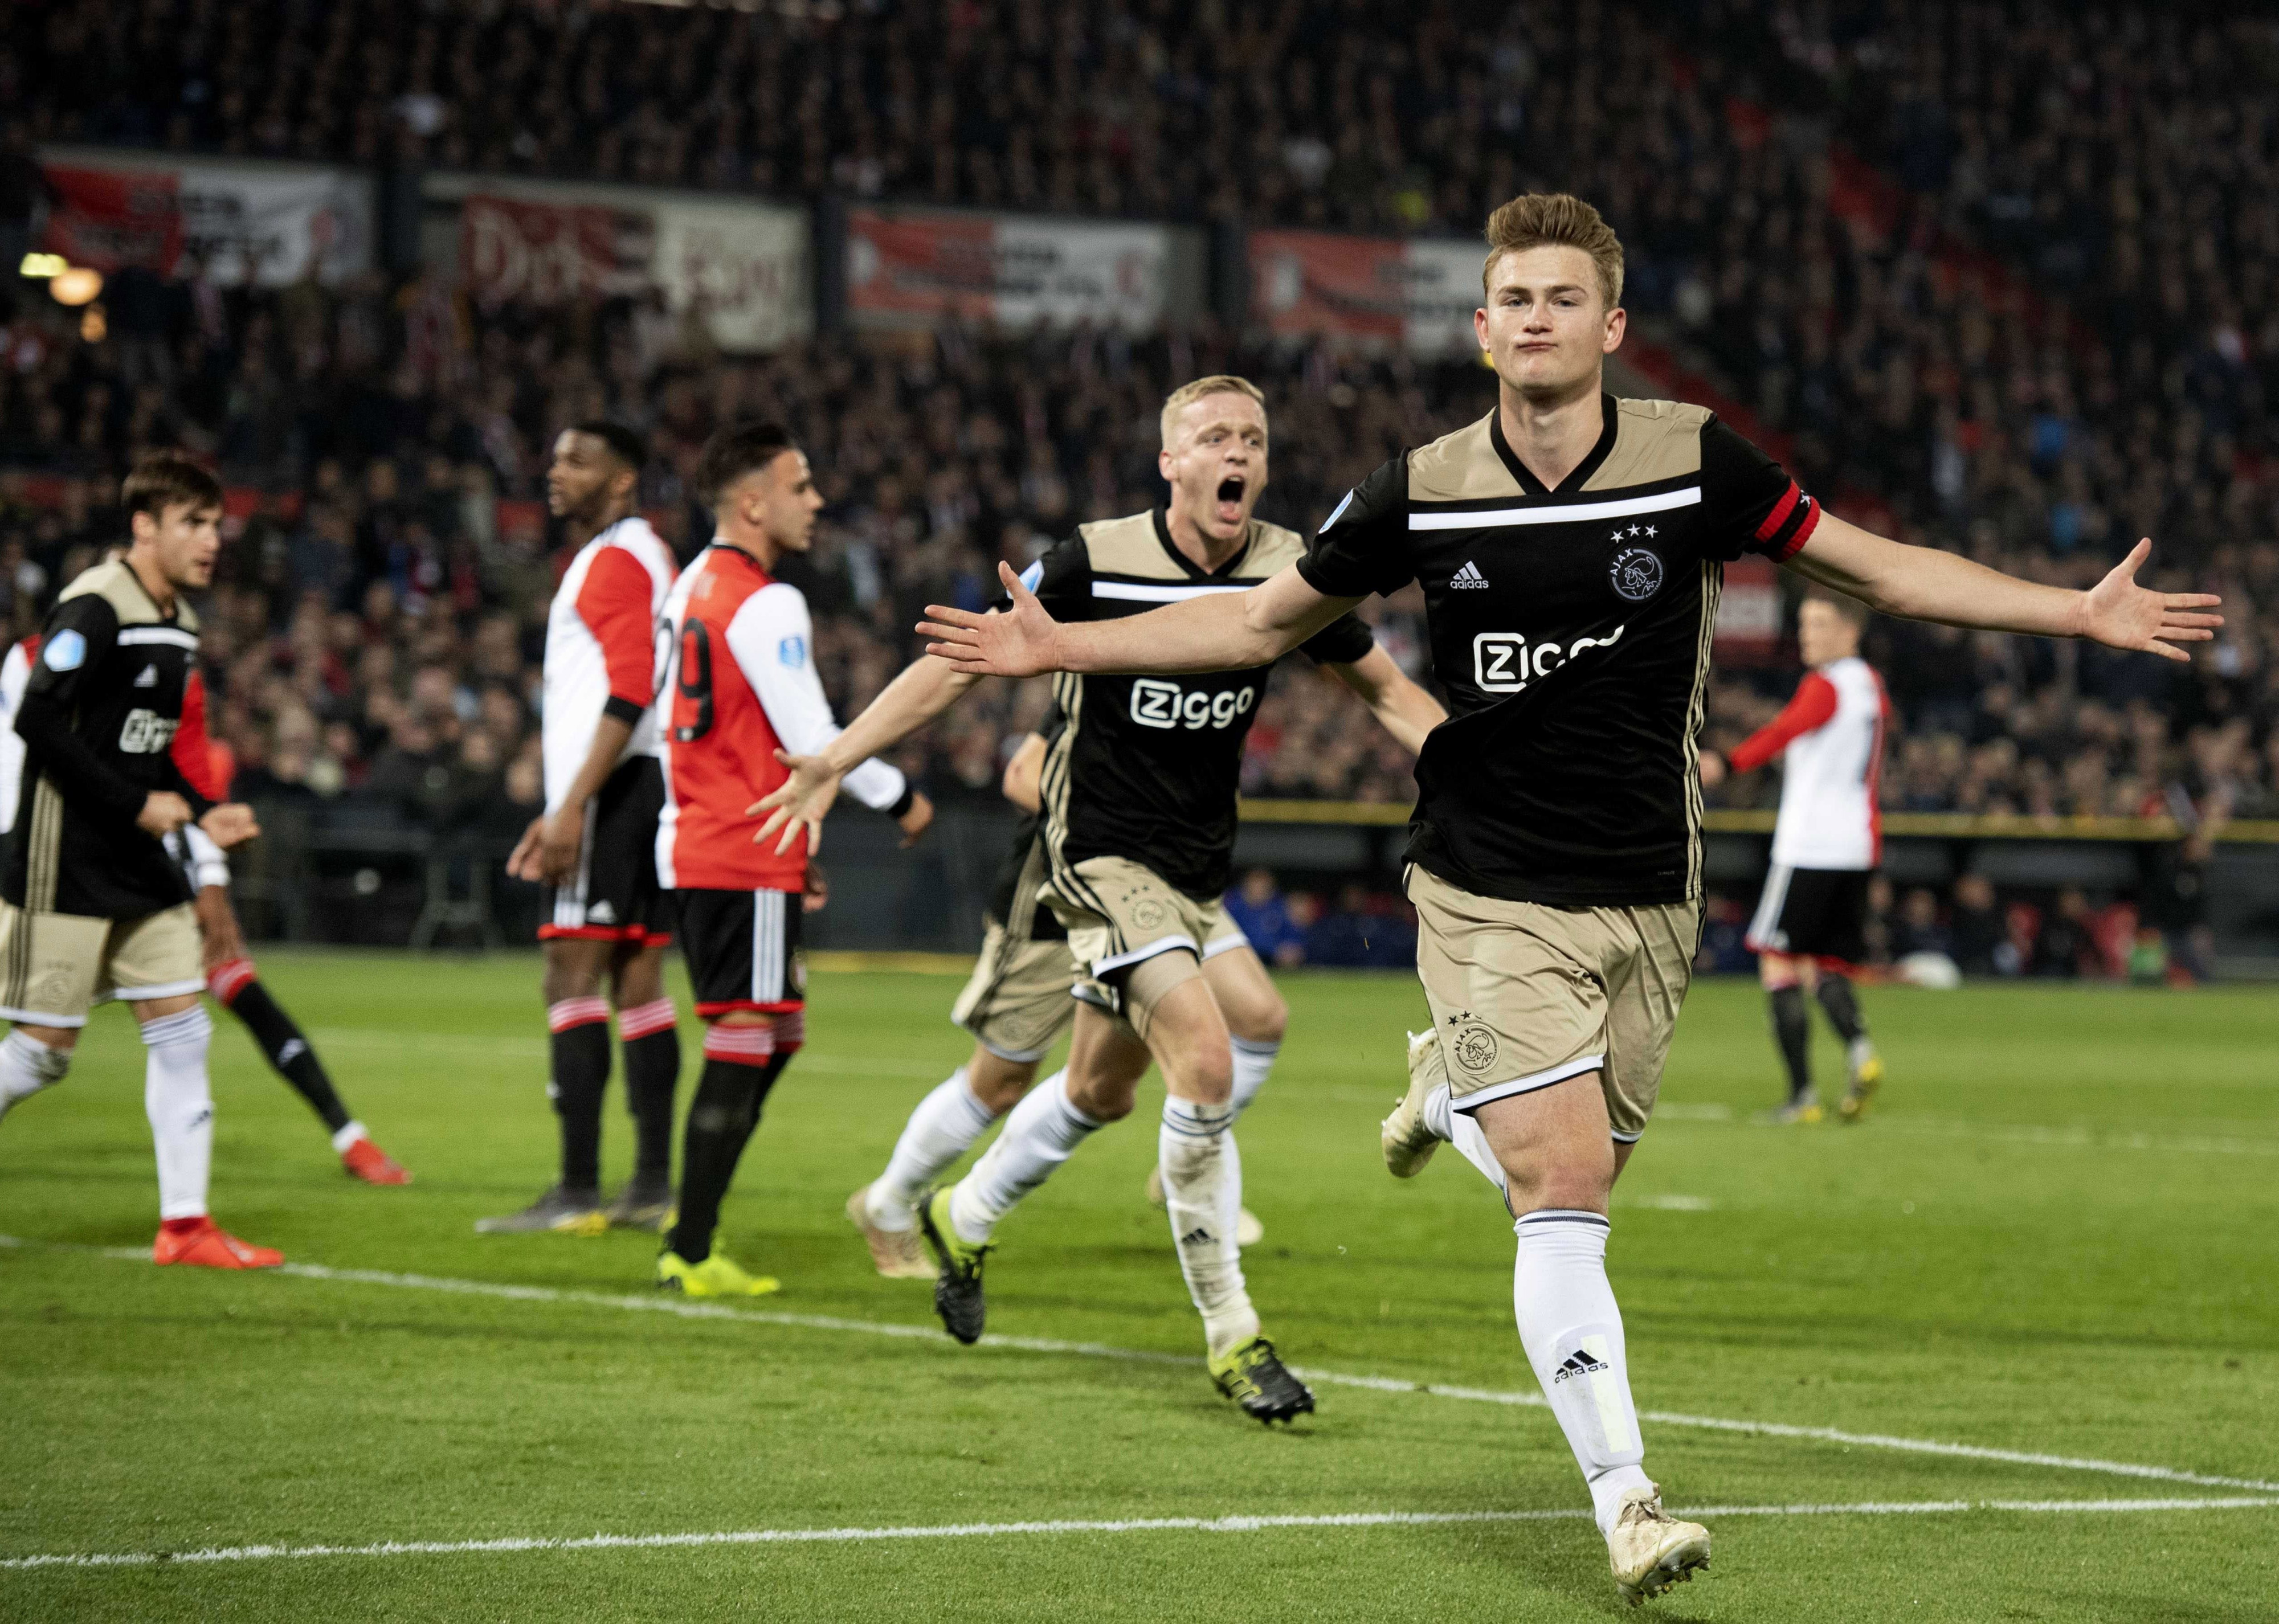 Matthijs de Ligt celebrando un gol con el Ajax de Ámsterdam / EFE